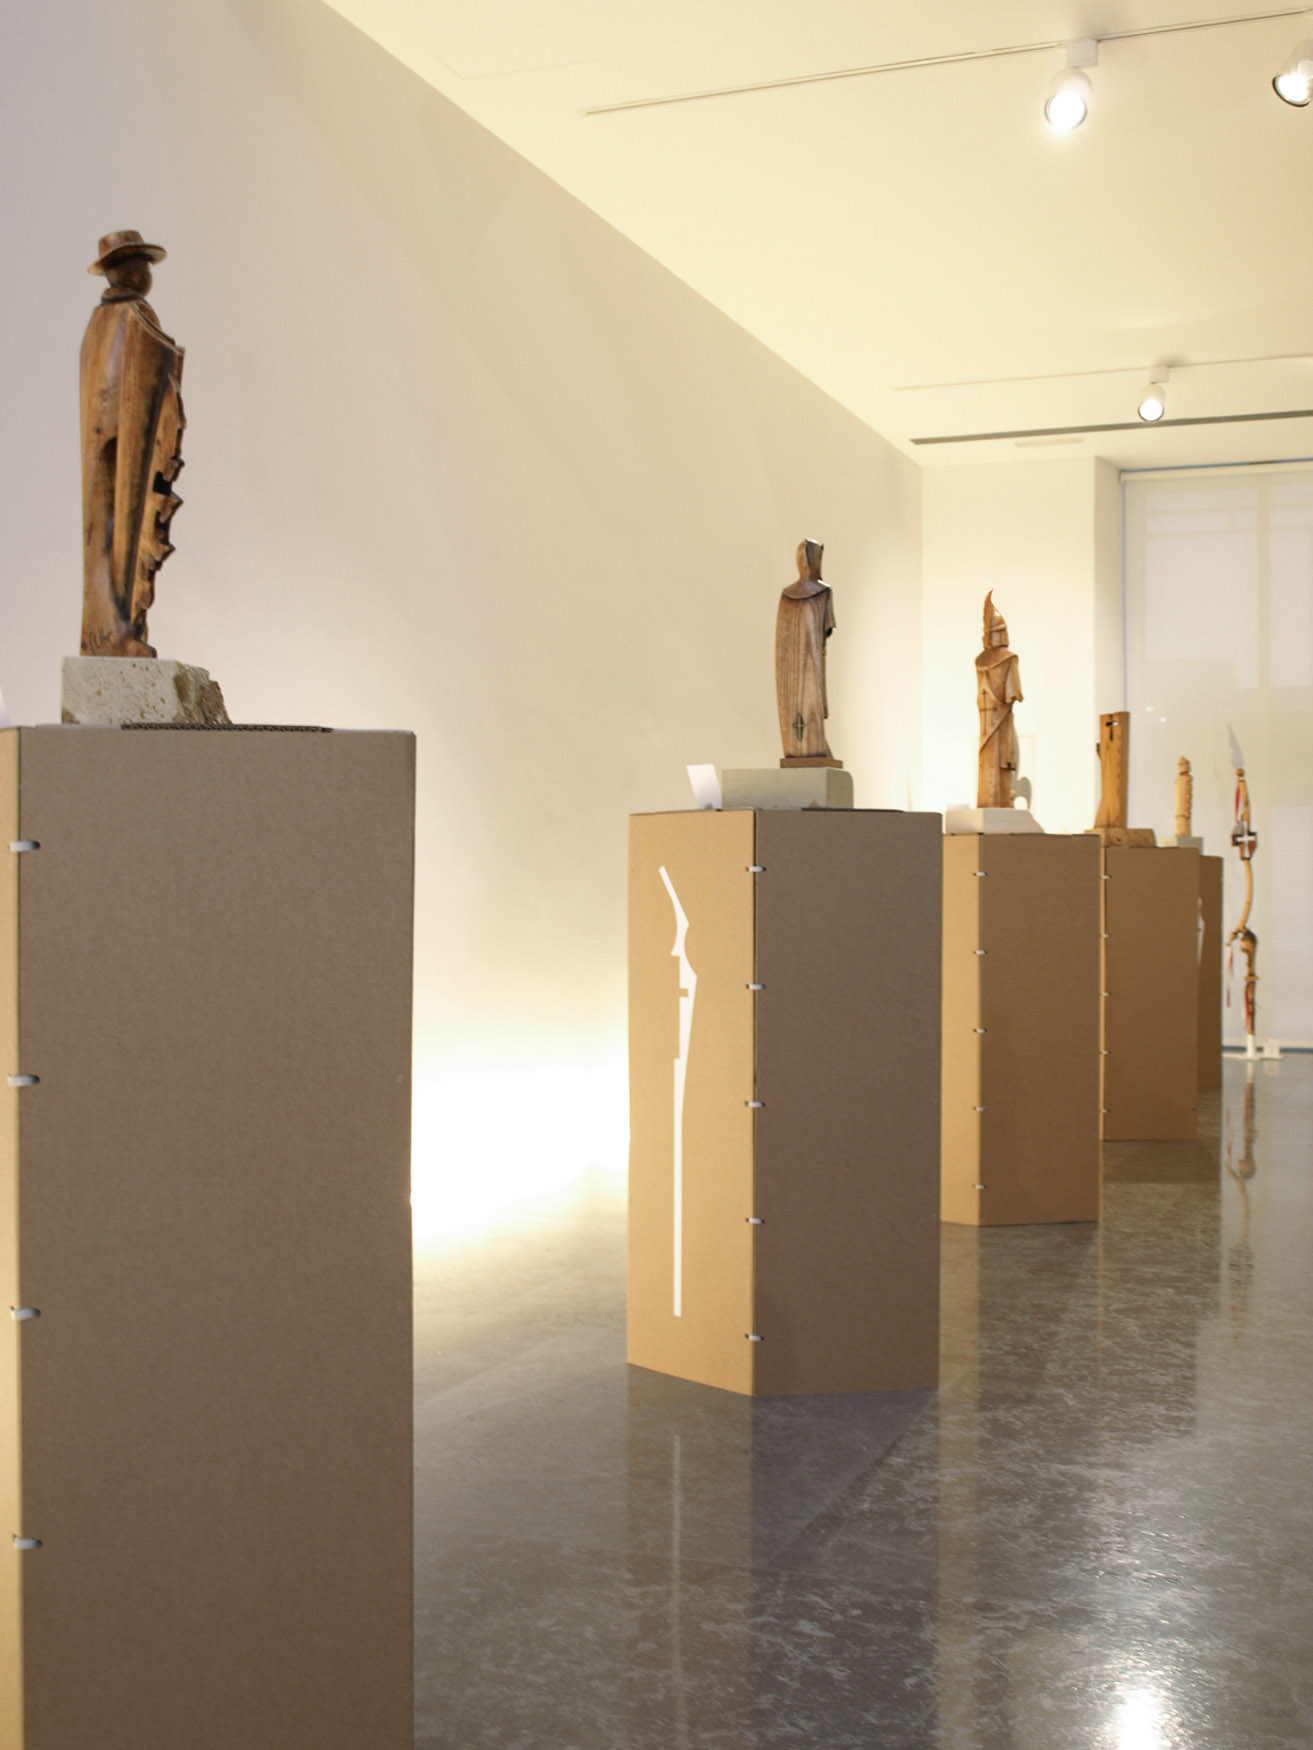 Proyecto de diseño de Rabacub para la exposición de esculturas en Ontinyent de Paco Mullor